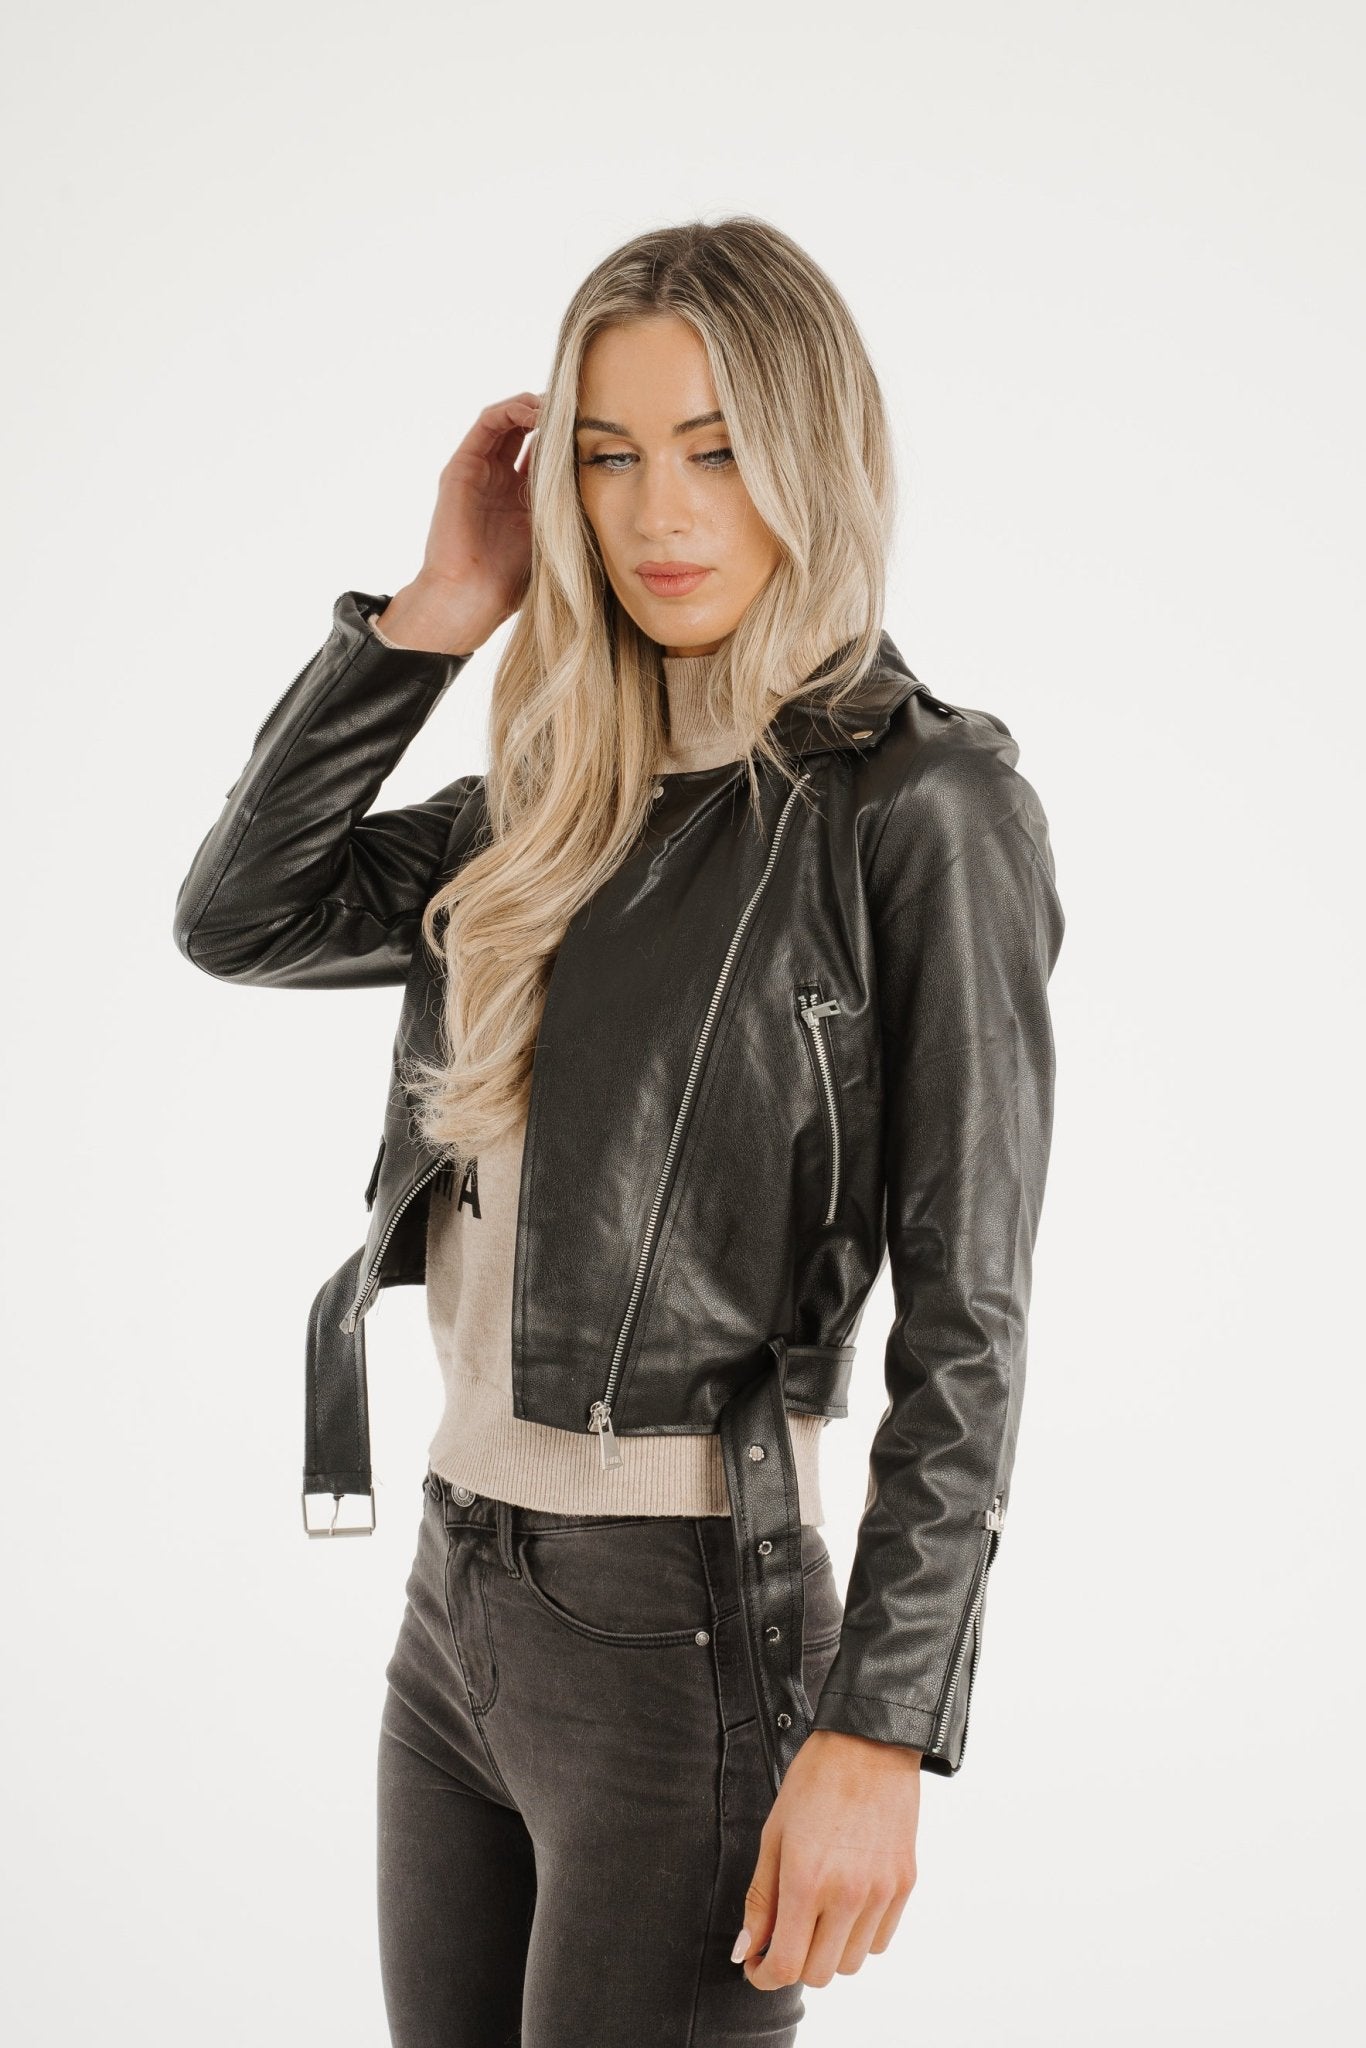 Tara Faux Leather Jacket In Black - The Walk in Wardrobe